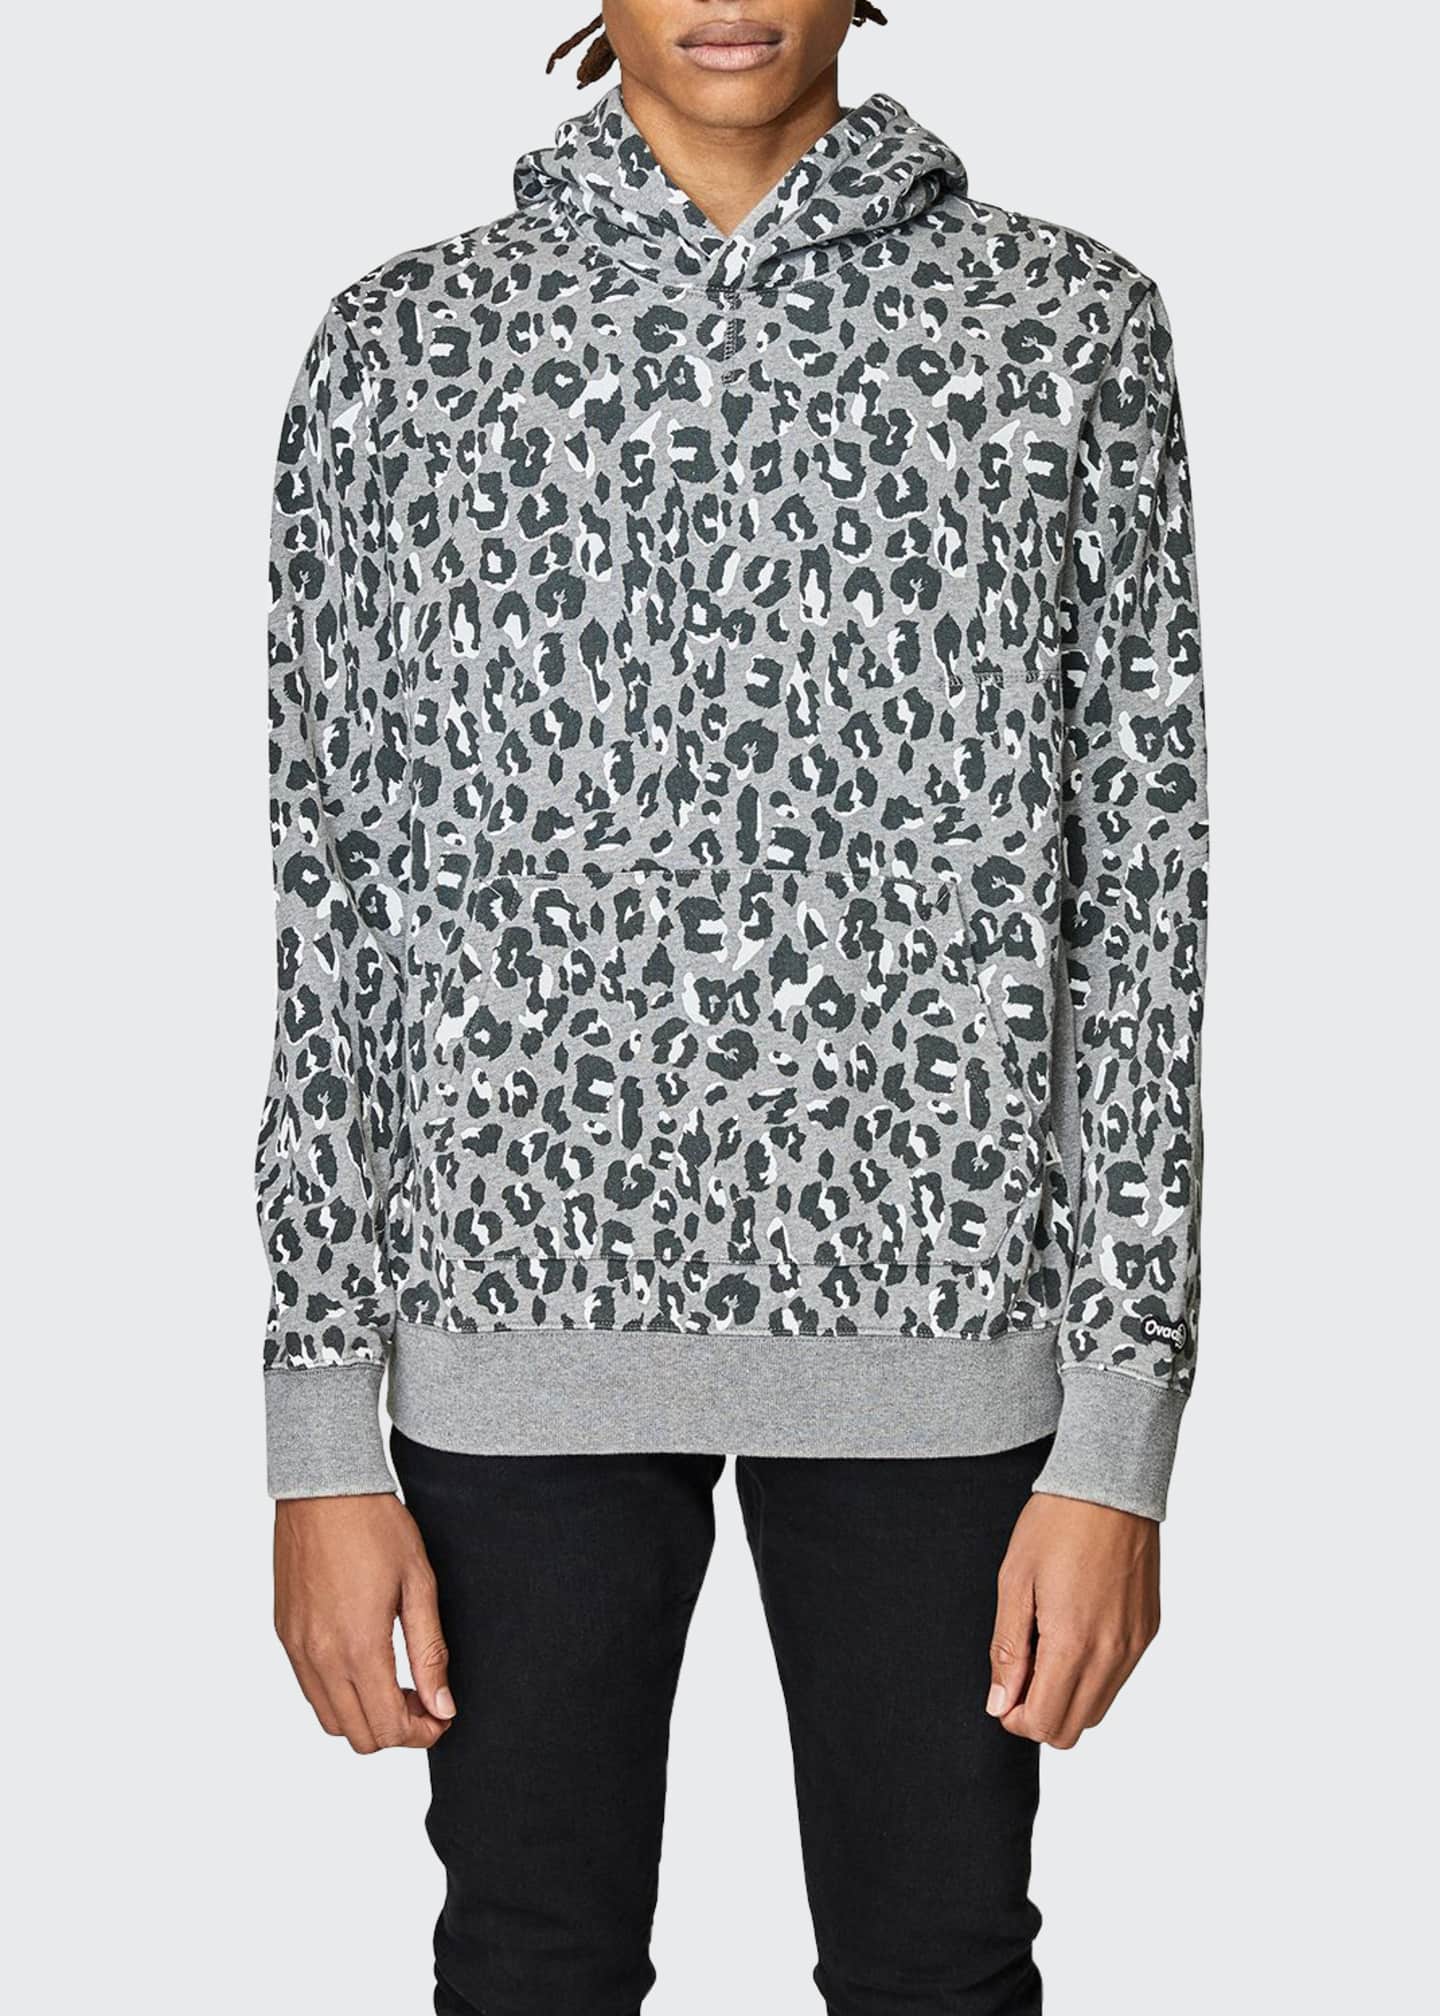 leopard hoodie men